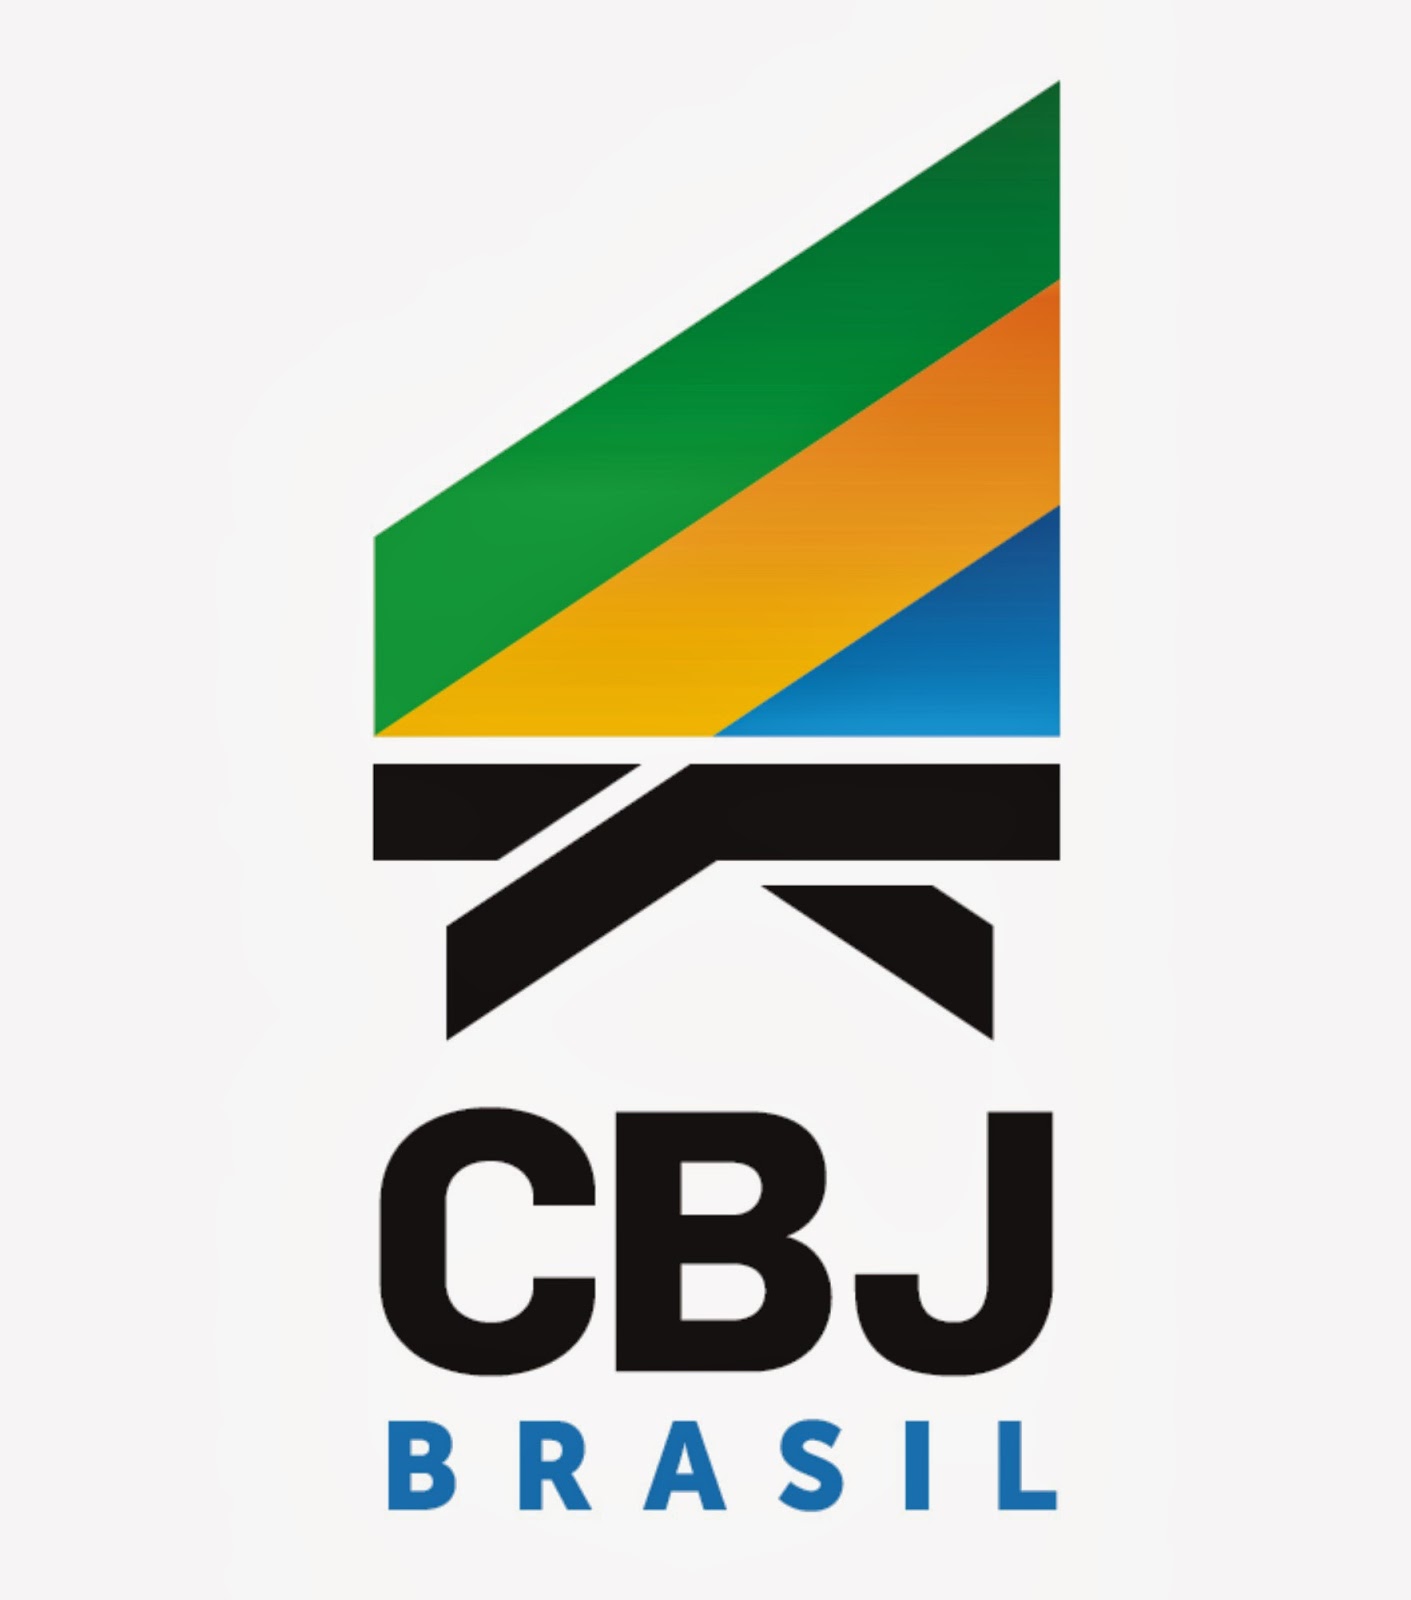 Confederação Brasileira de Xadrez Logo PNG Vector (CDR) Free Download